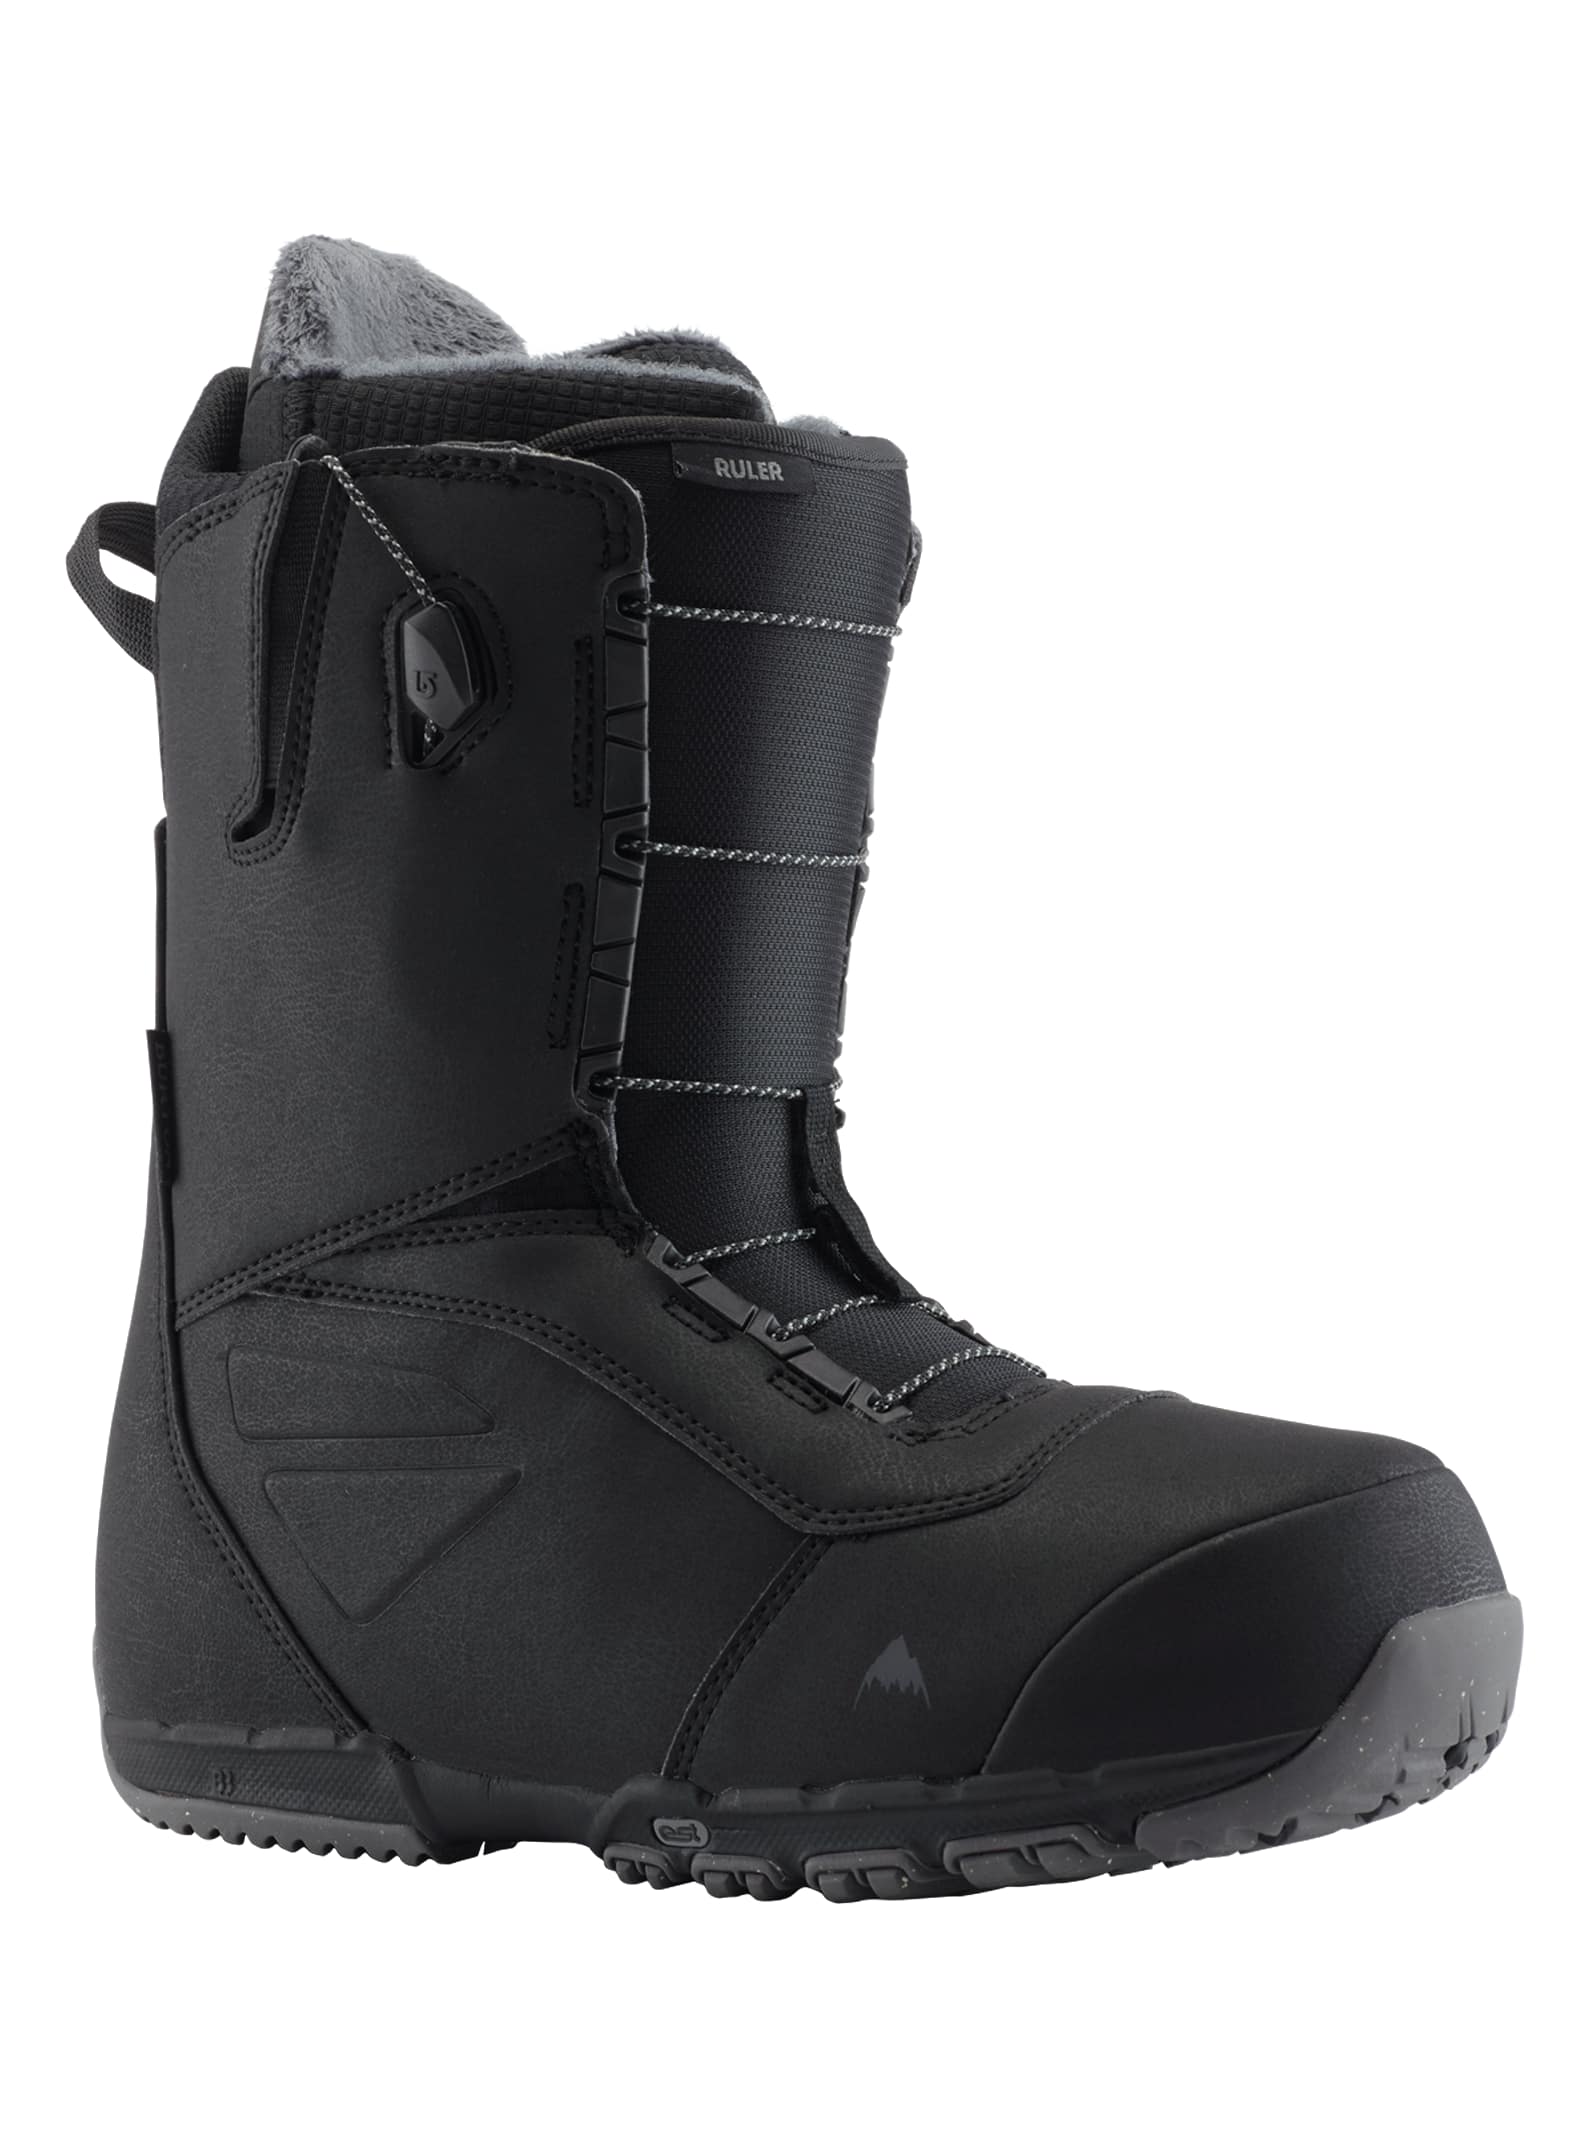 Burton - Boots de snowboard Ruler pour homme - Large, Black, 10